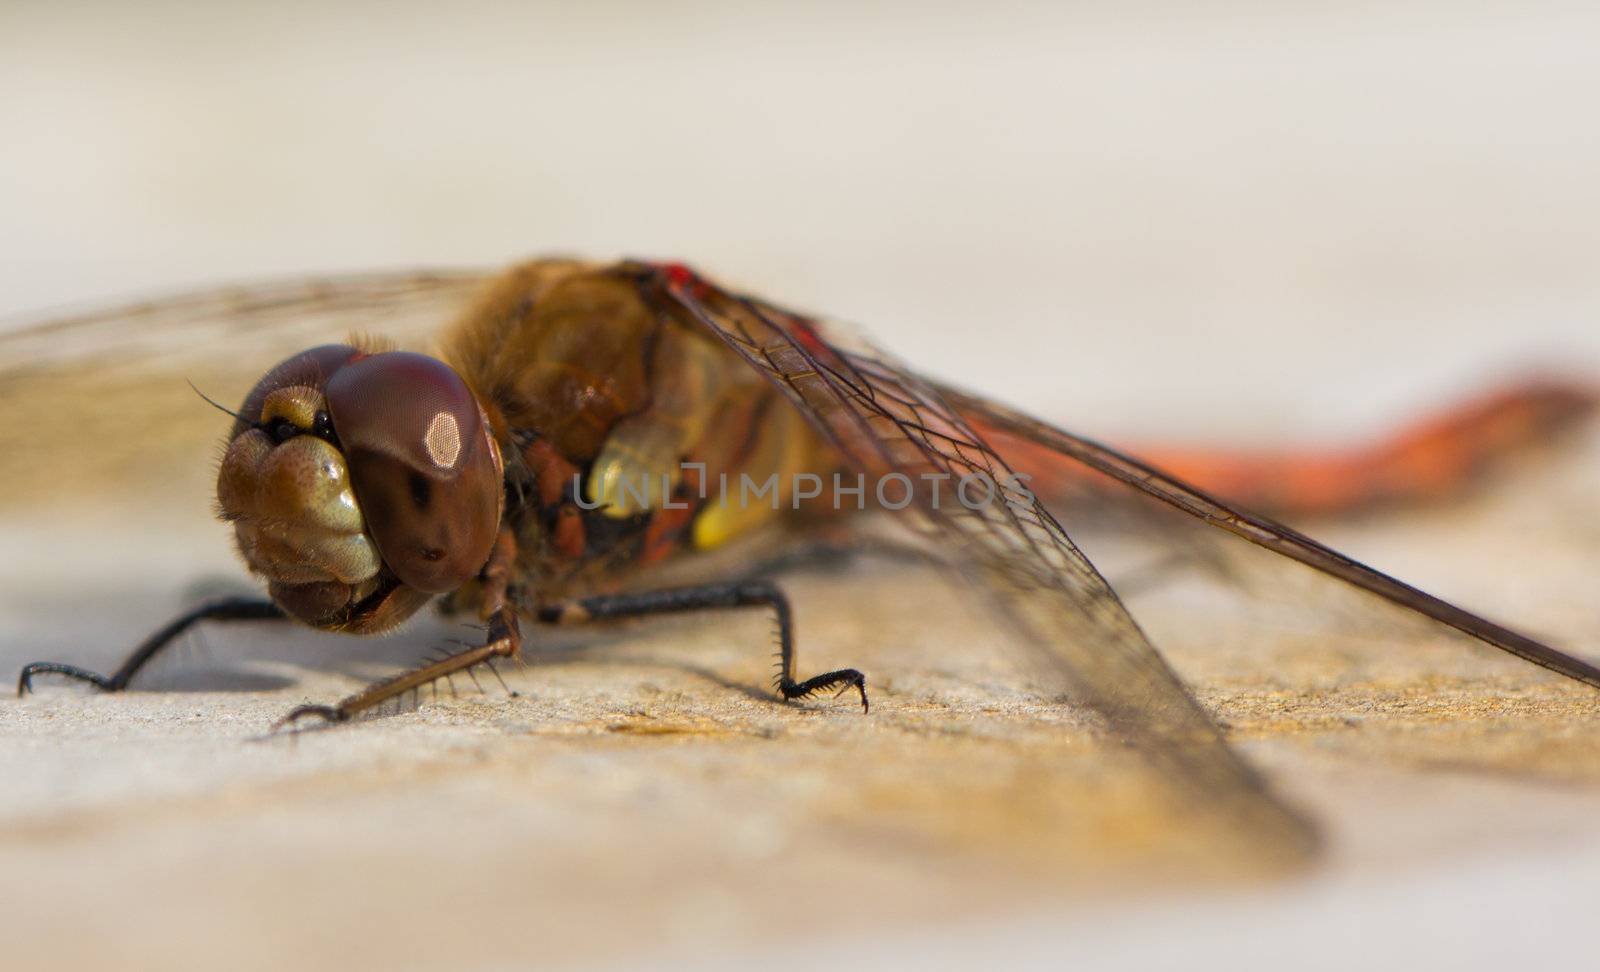 A close up of a Common Darter Dragonfly (Sympetrum striolatum)